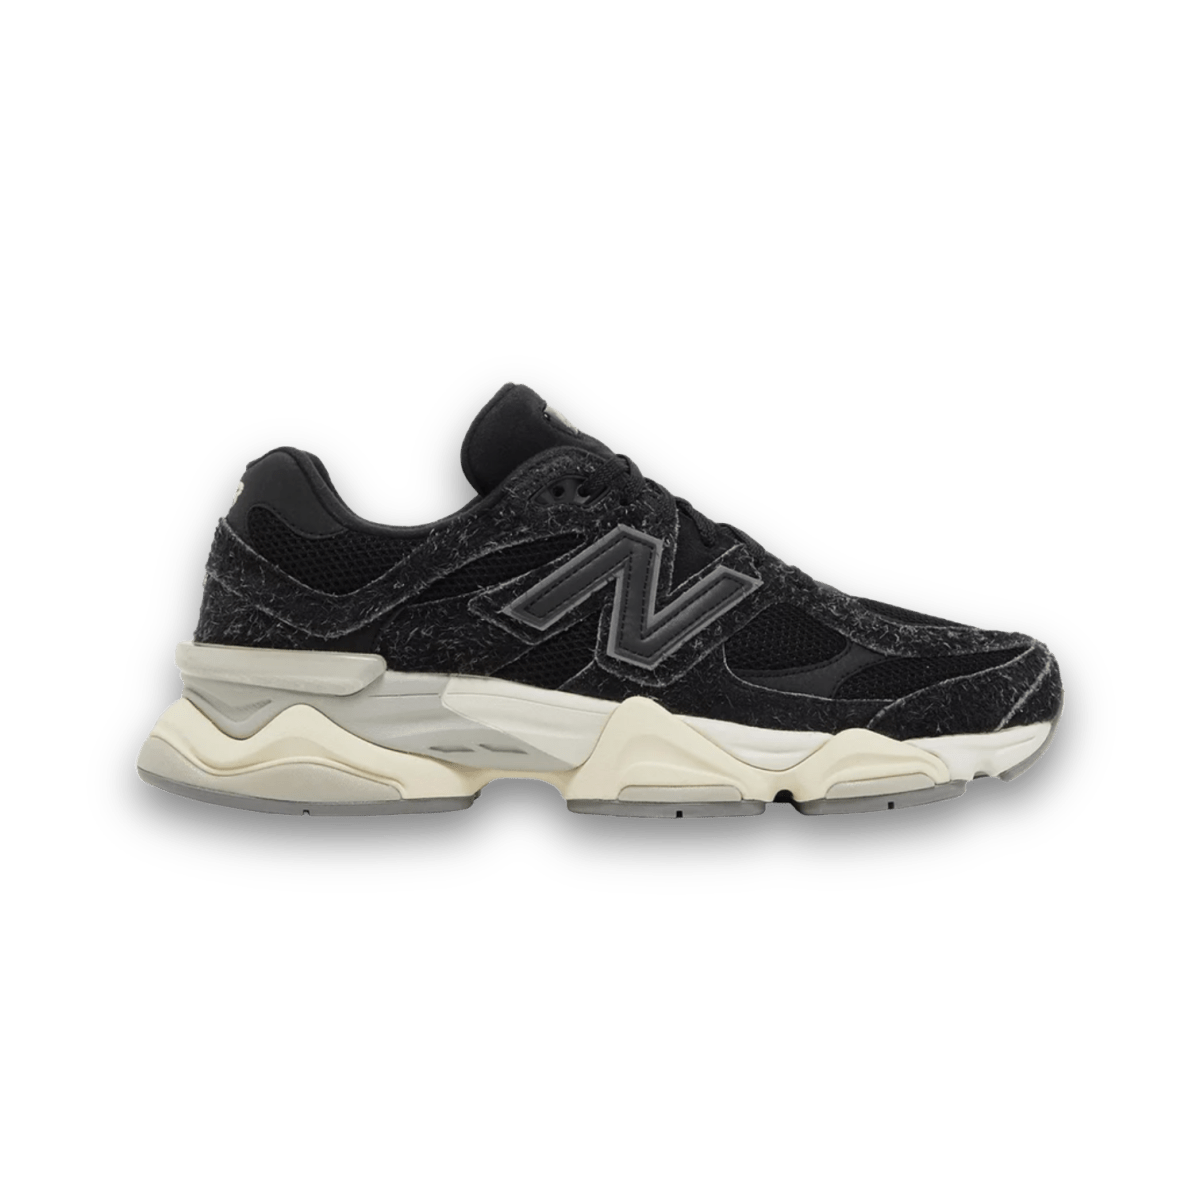 New Balance 9060 'Suede Pack - Black' - Low Sneaker - Jawns on Fire Sneakers & Streetwear